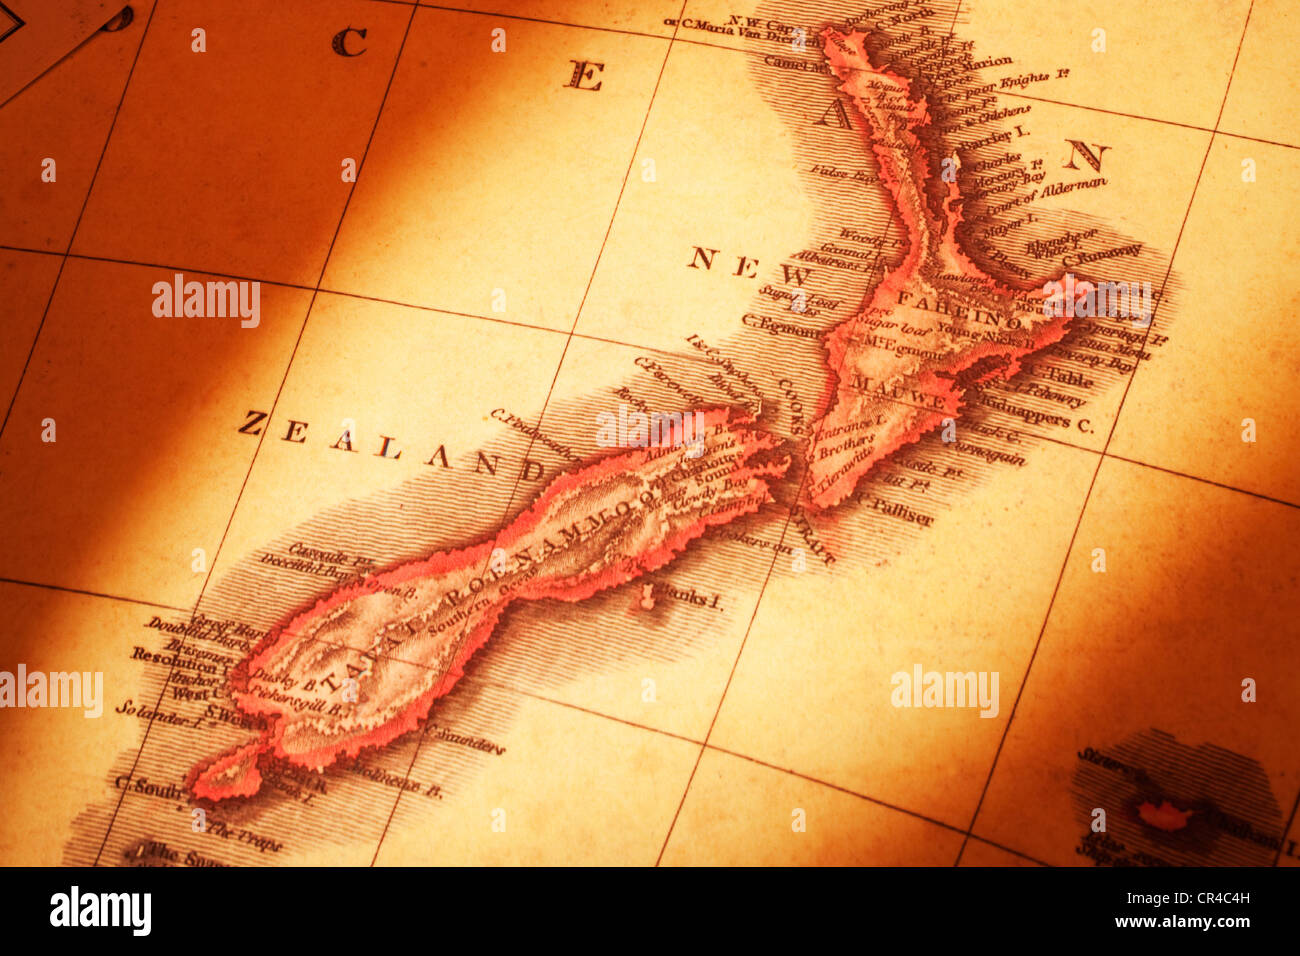 Mappa di Nuova Zelanda dal 1818, con alcuni errori, in illuminazione calda; concentrarsi sulla stretto di Cook. Foto Stock